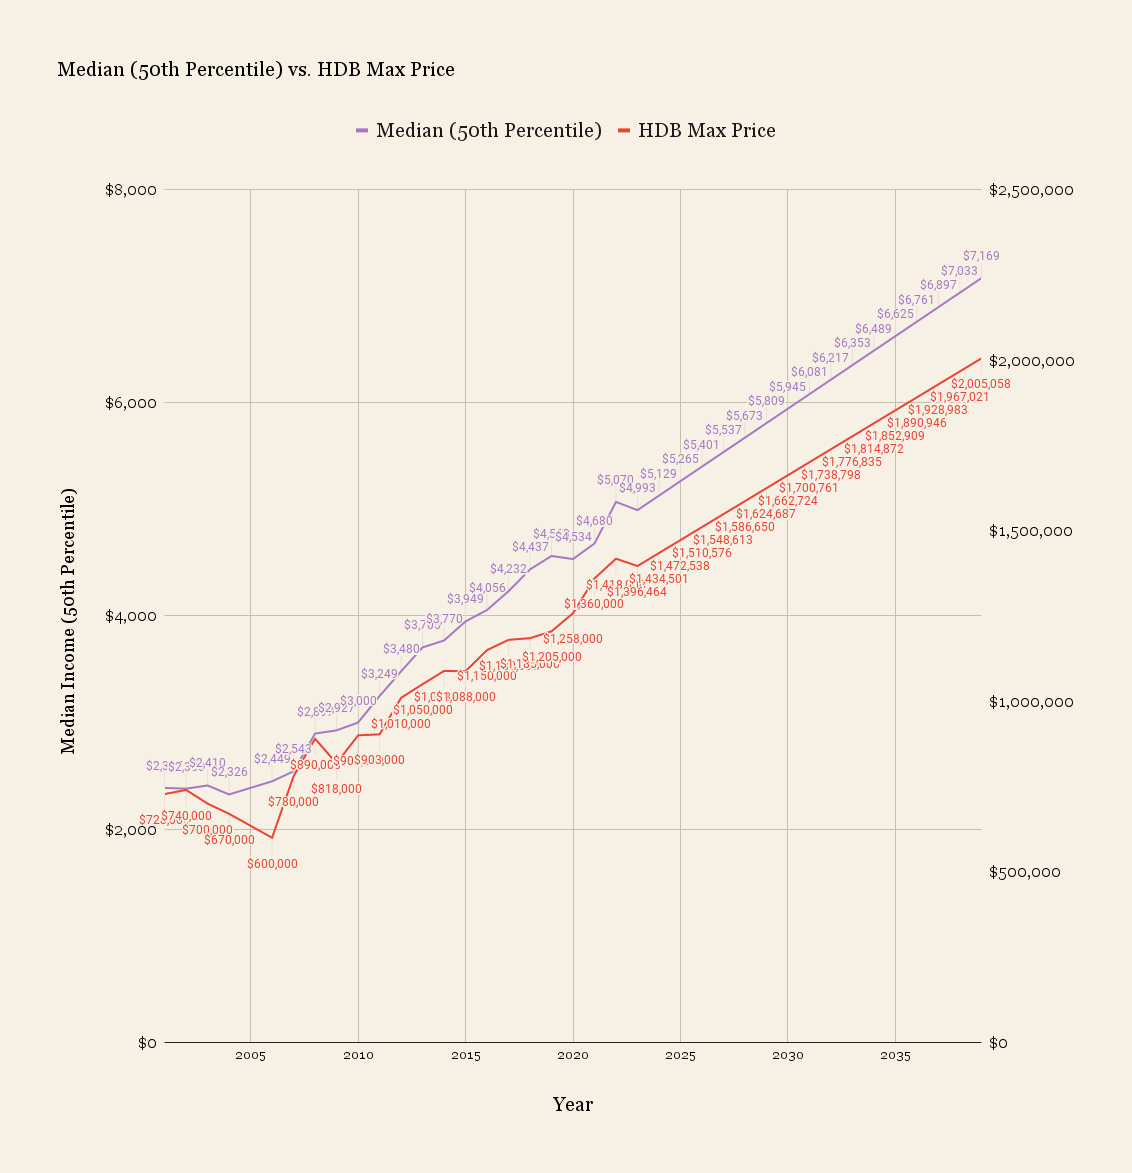 Median 50th Percentile vs. HDB Max Price